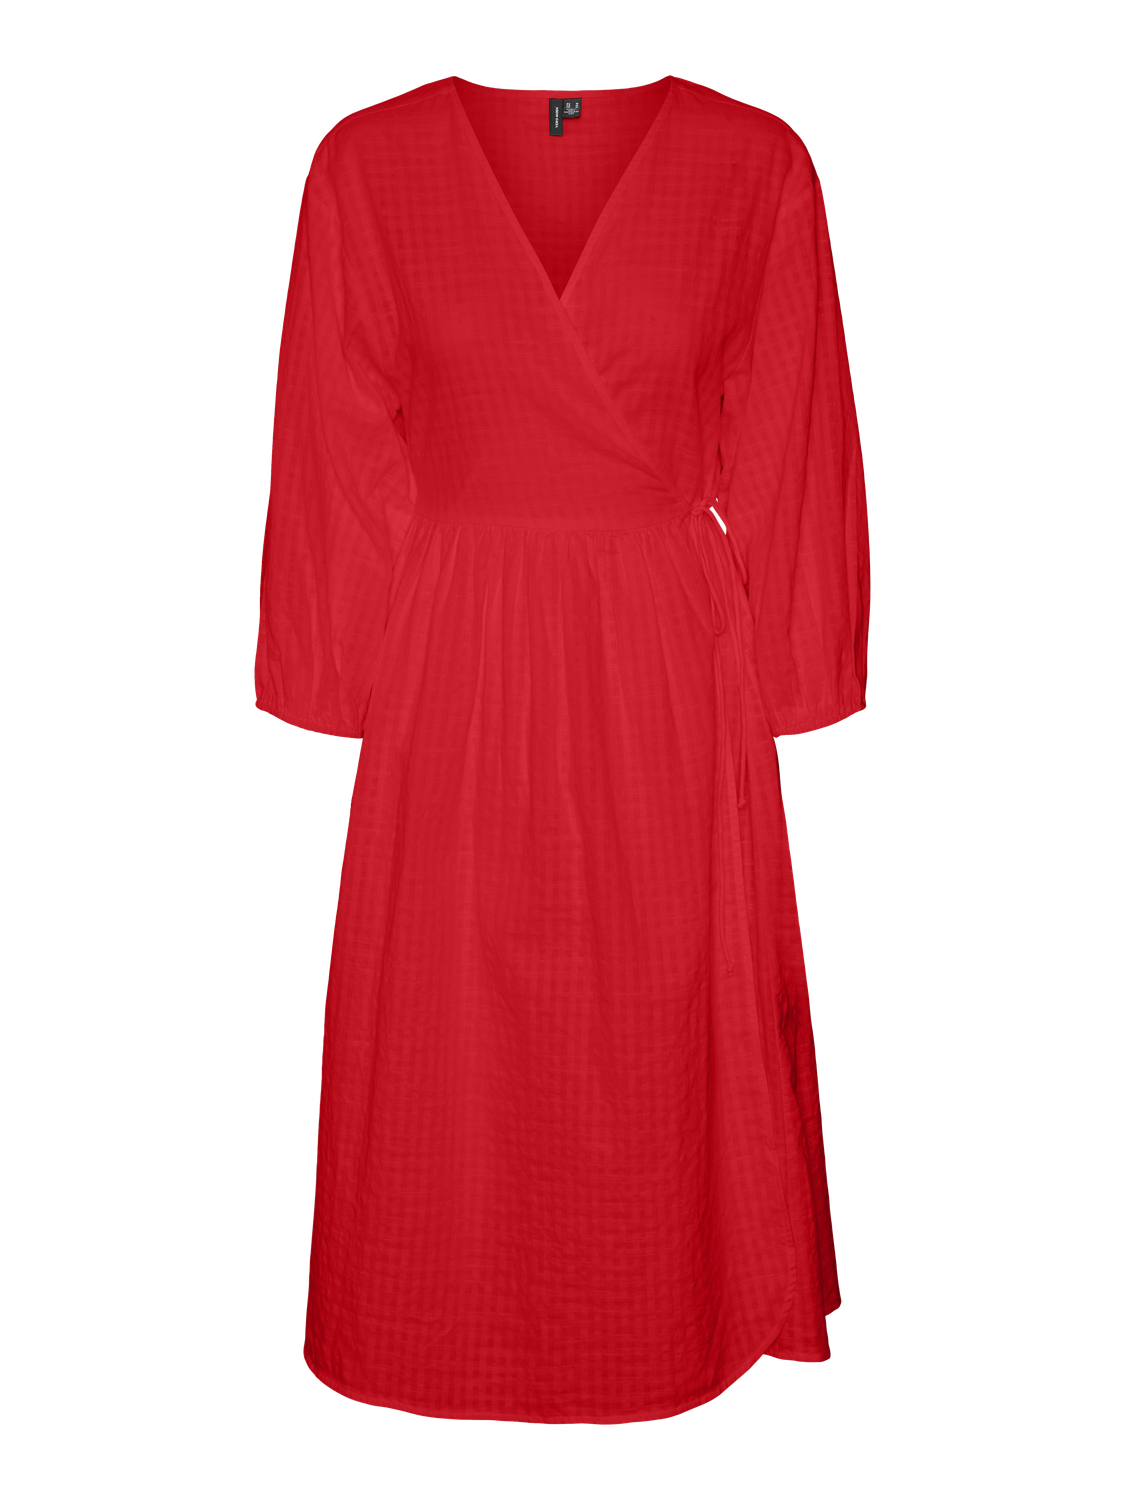 VMGUNILLA Dress - High Risk Red